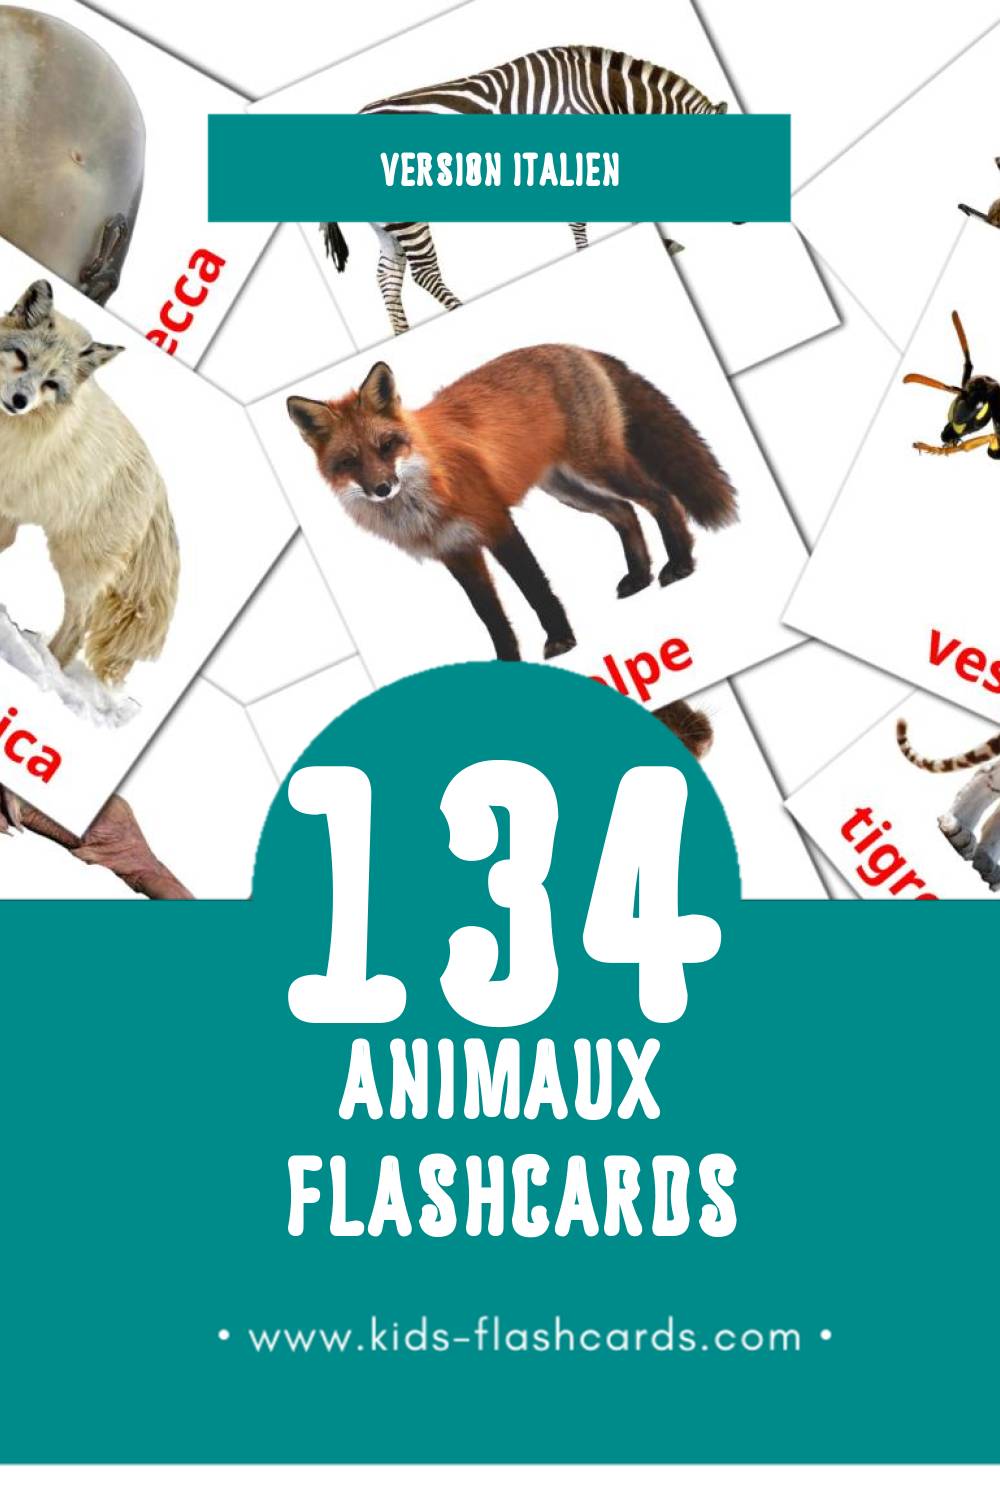 Flashcards Visual Animali pour les tout-petits (134 cartes en Italien)